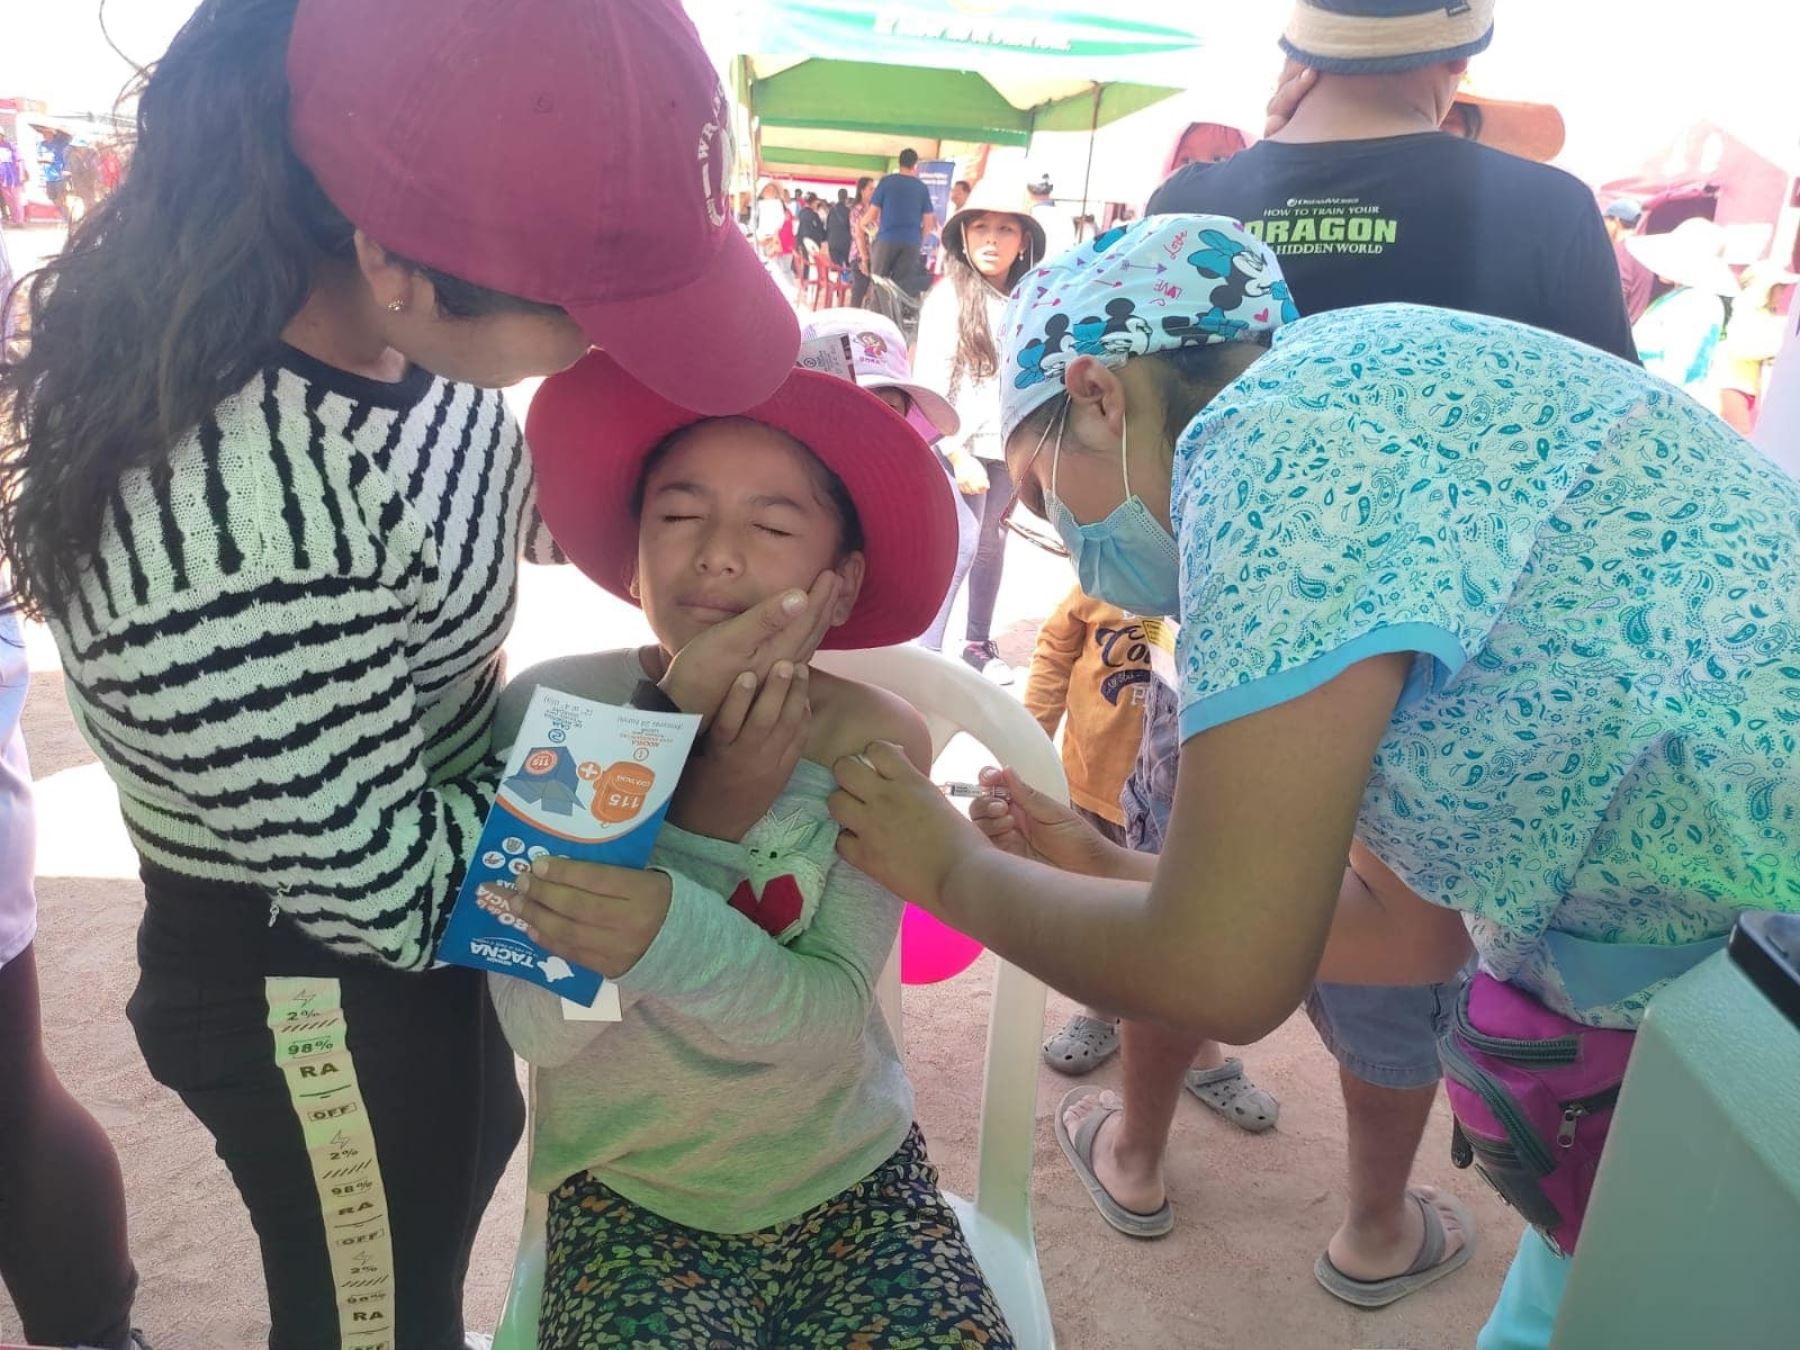 La Diresa Tacna espera inmunizar a más de 4,000 personas, entre niños y adultos mayores, durante la campaña Semana de Vacunación en las Américas que organiza el Minsa. ANDINA/Difusión